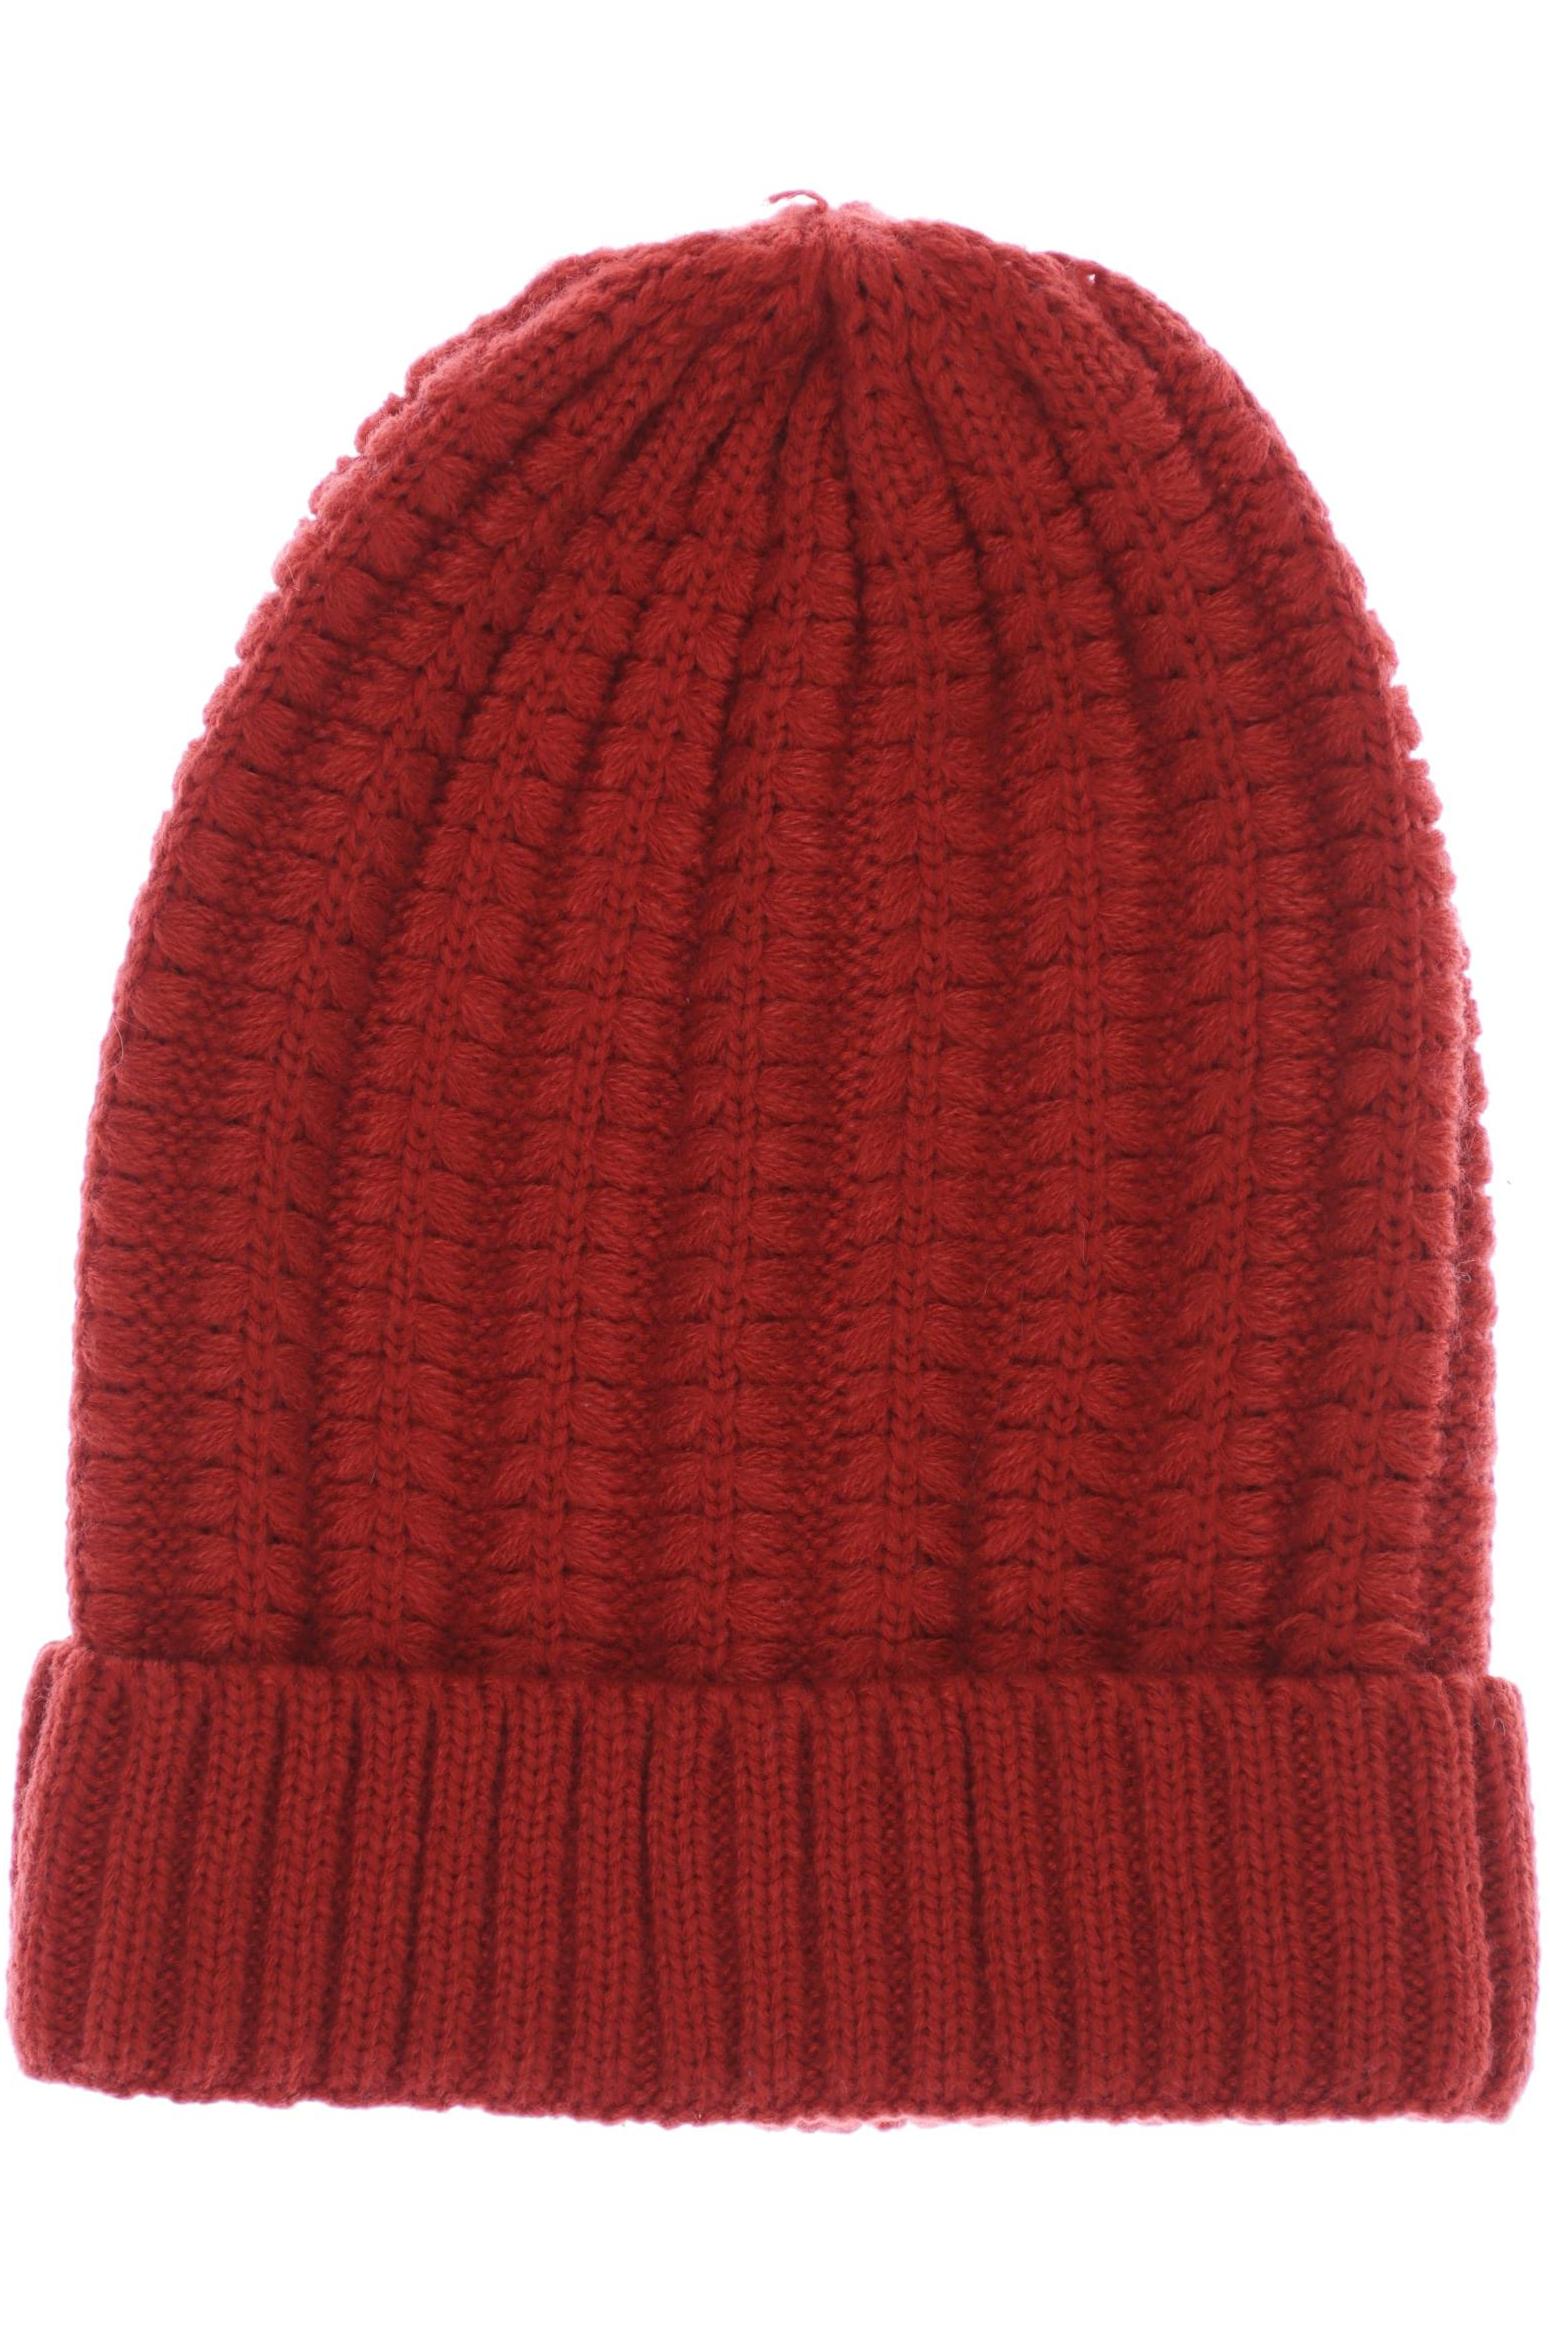 ICHI Damen Hut/Mütze, rot von Ichi